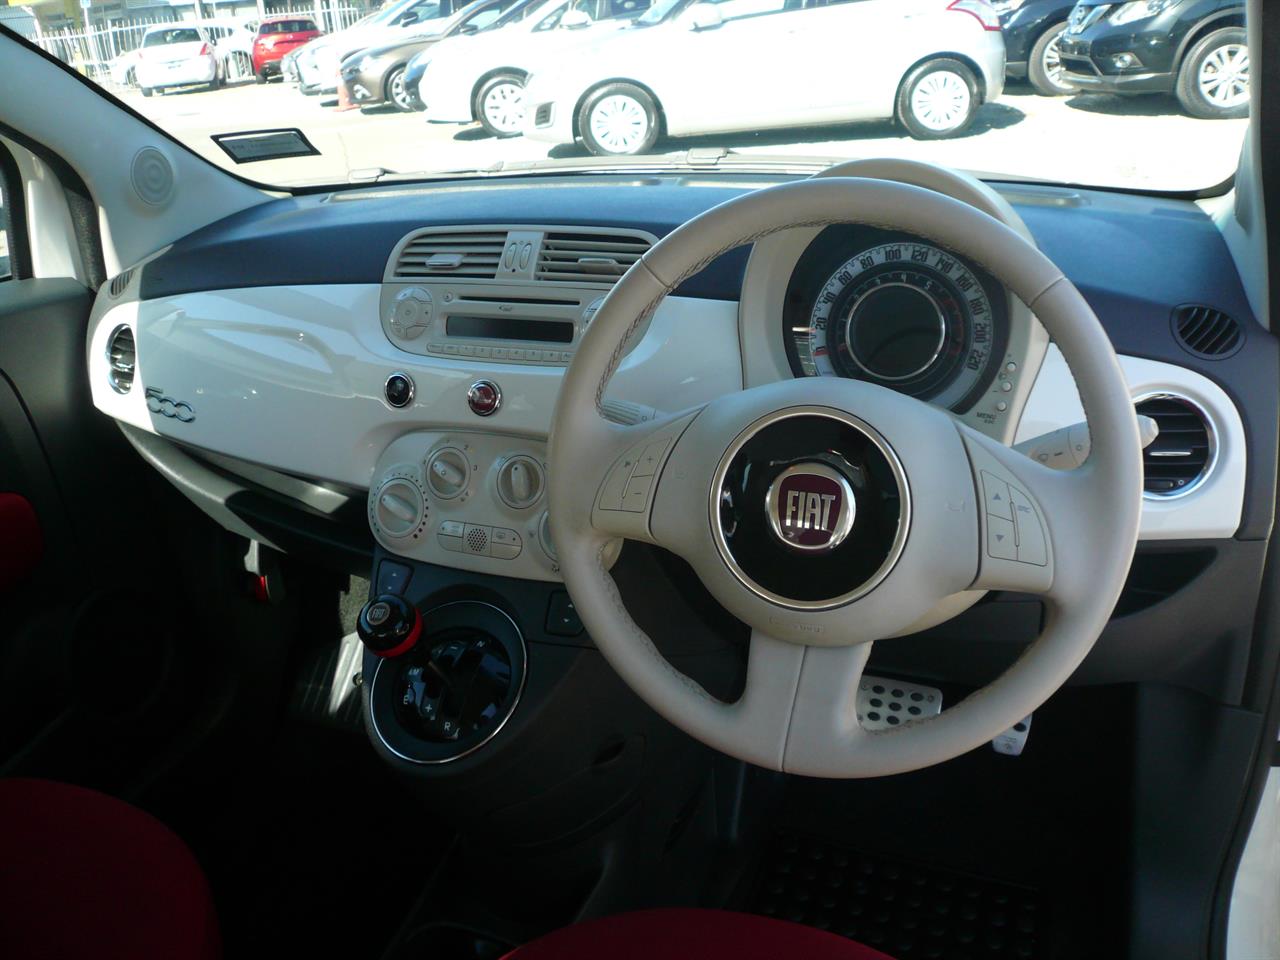 2010 Fiat 500 NZ new sport